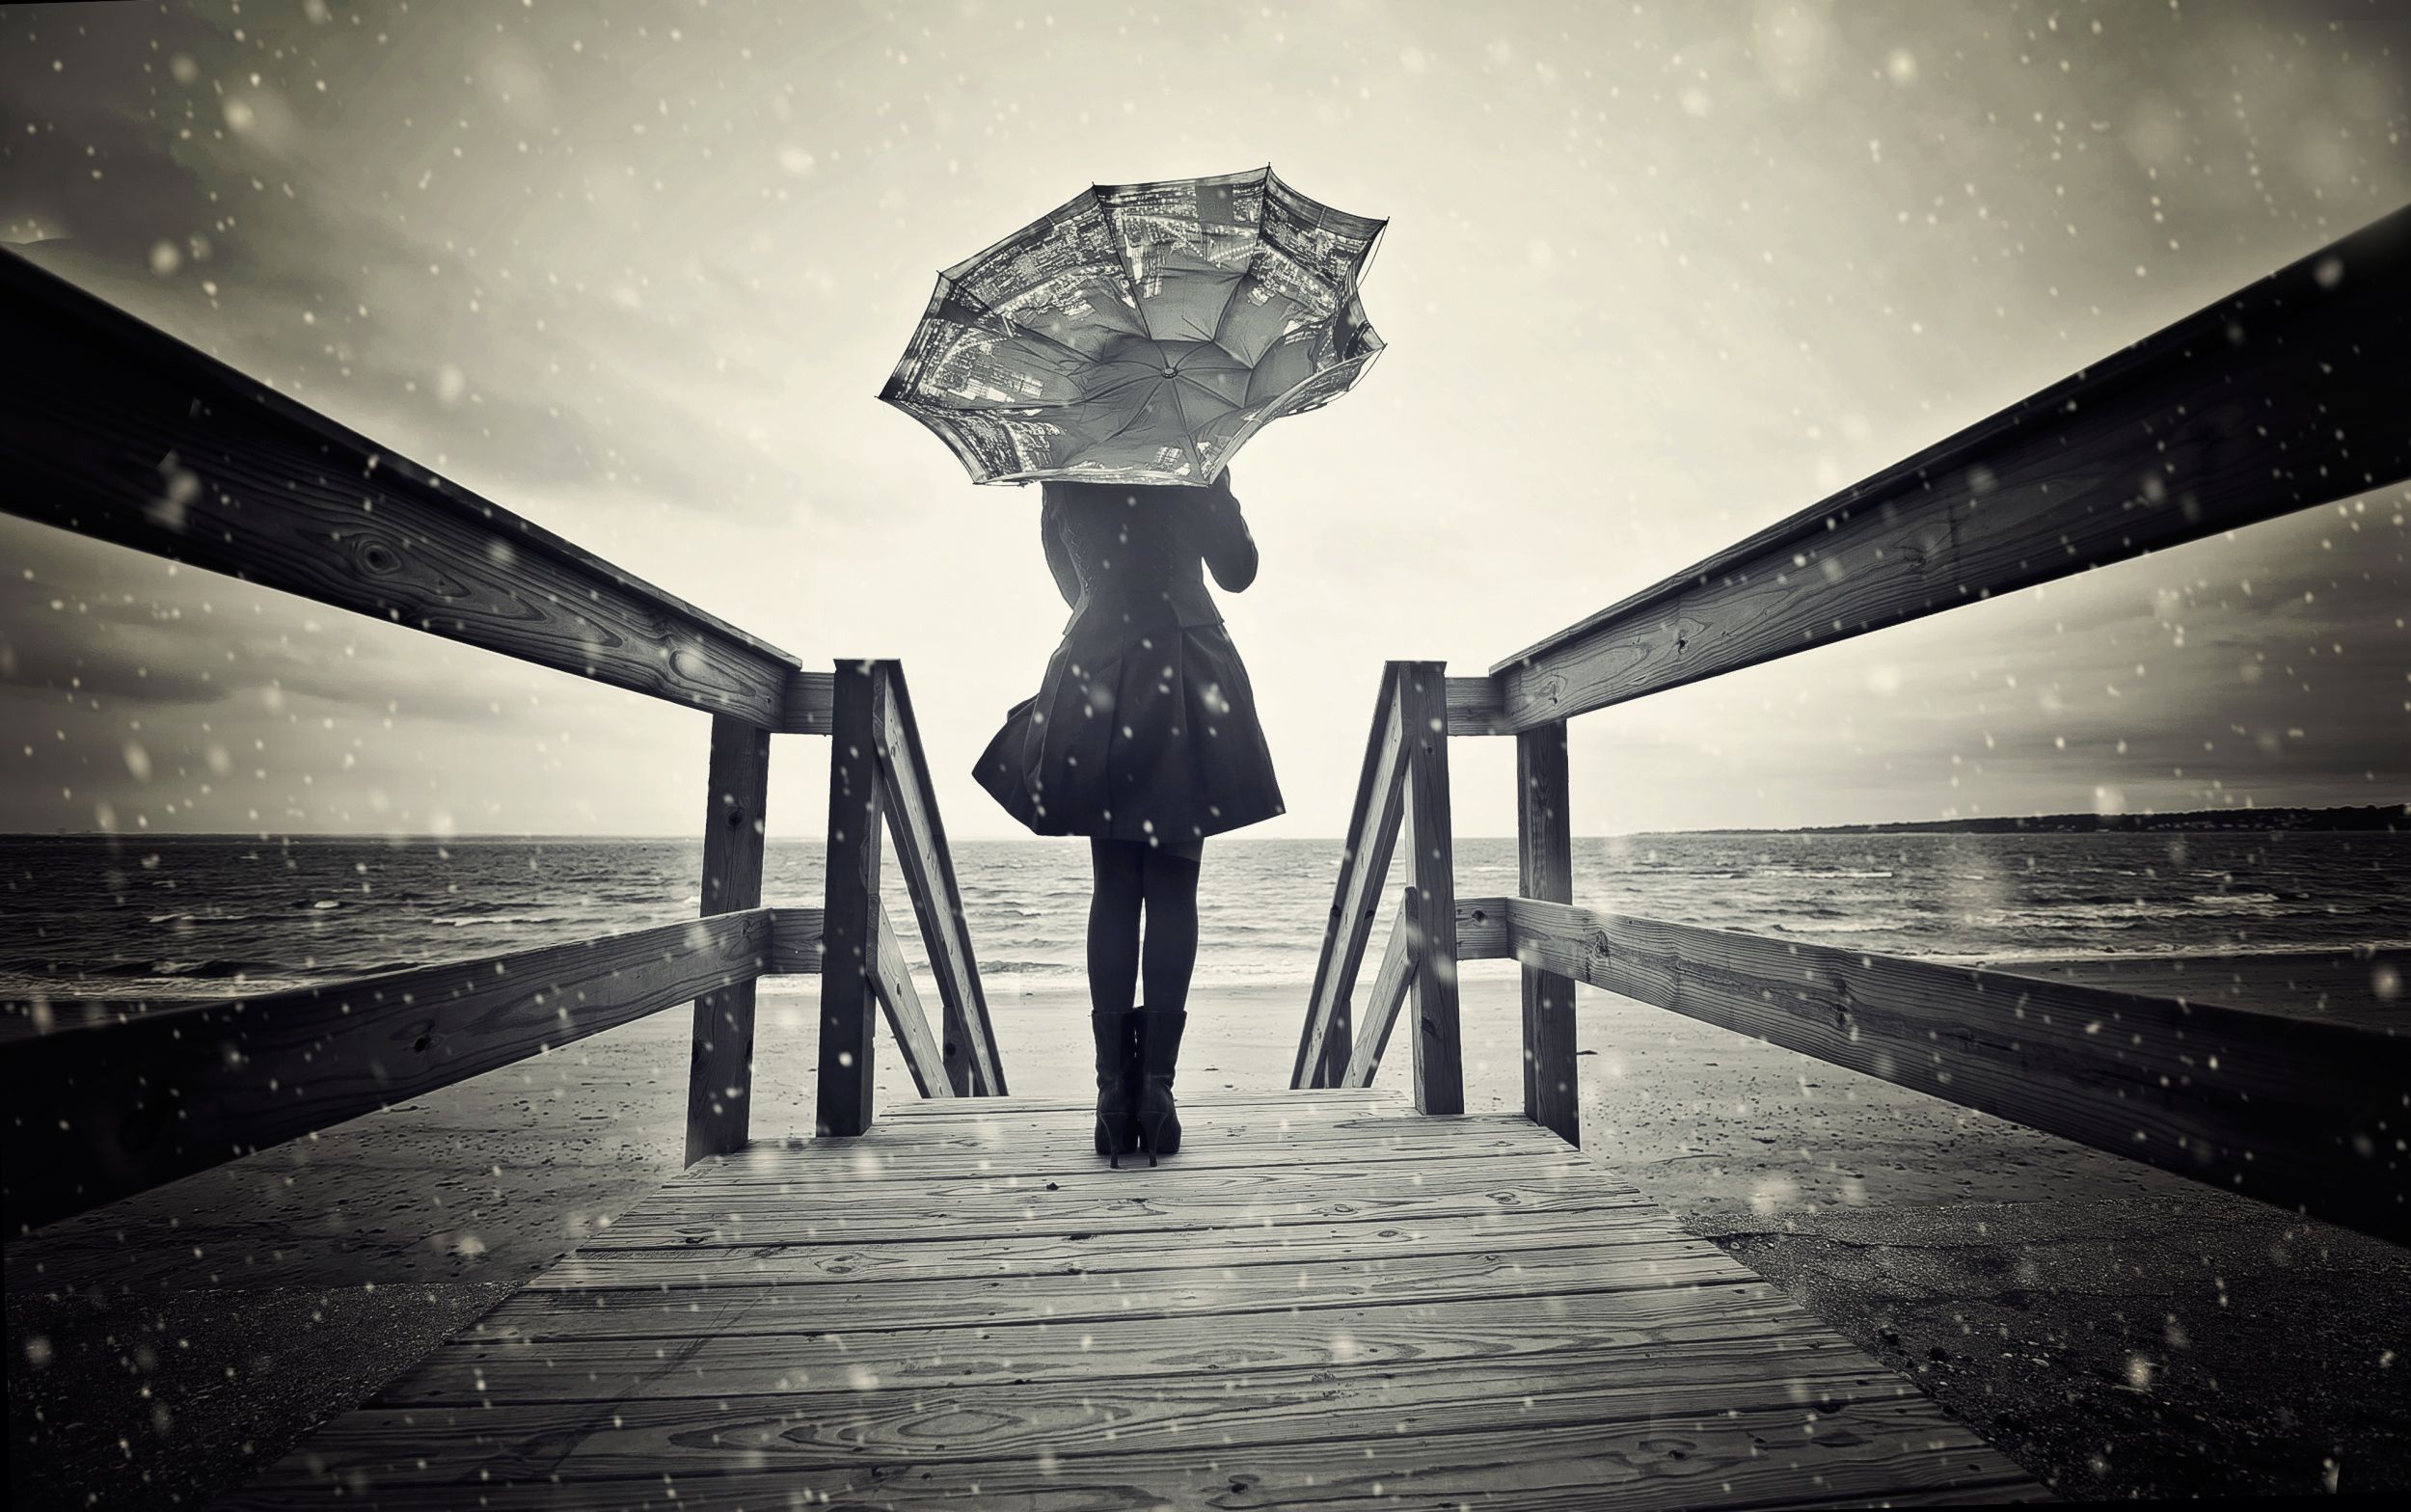 23+] Sad Girl in Rain Wallpapers - WallpaperSafari